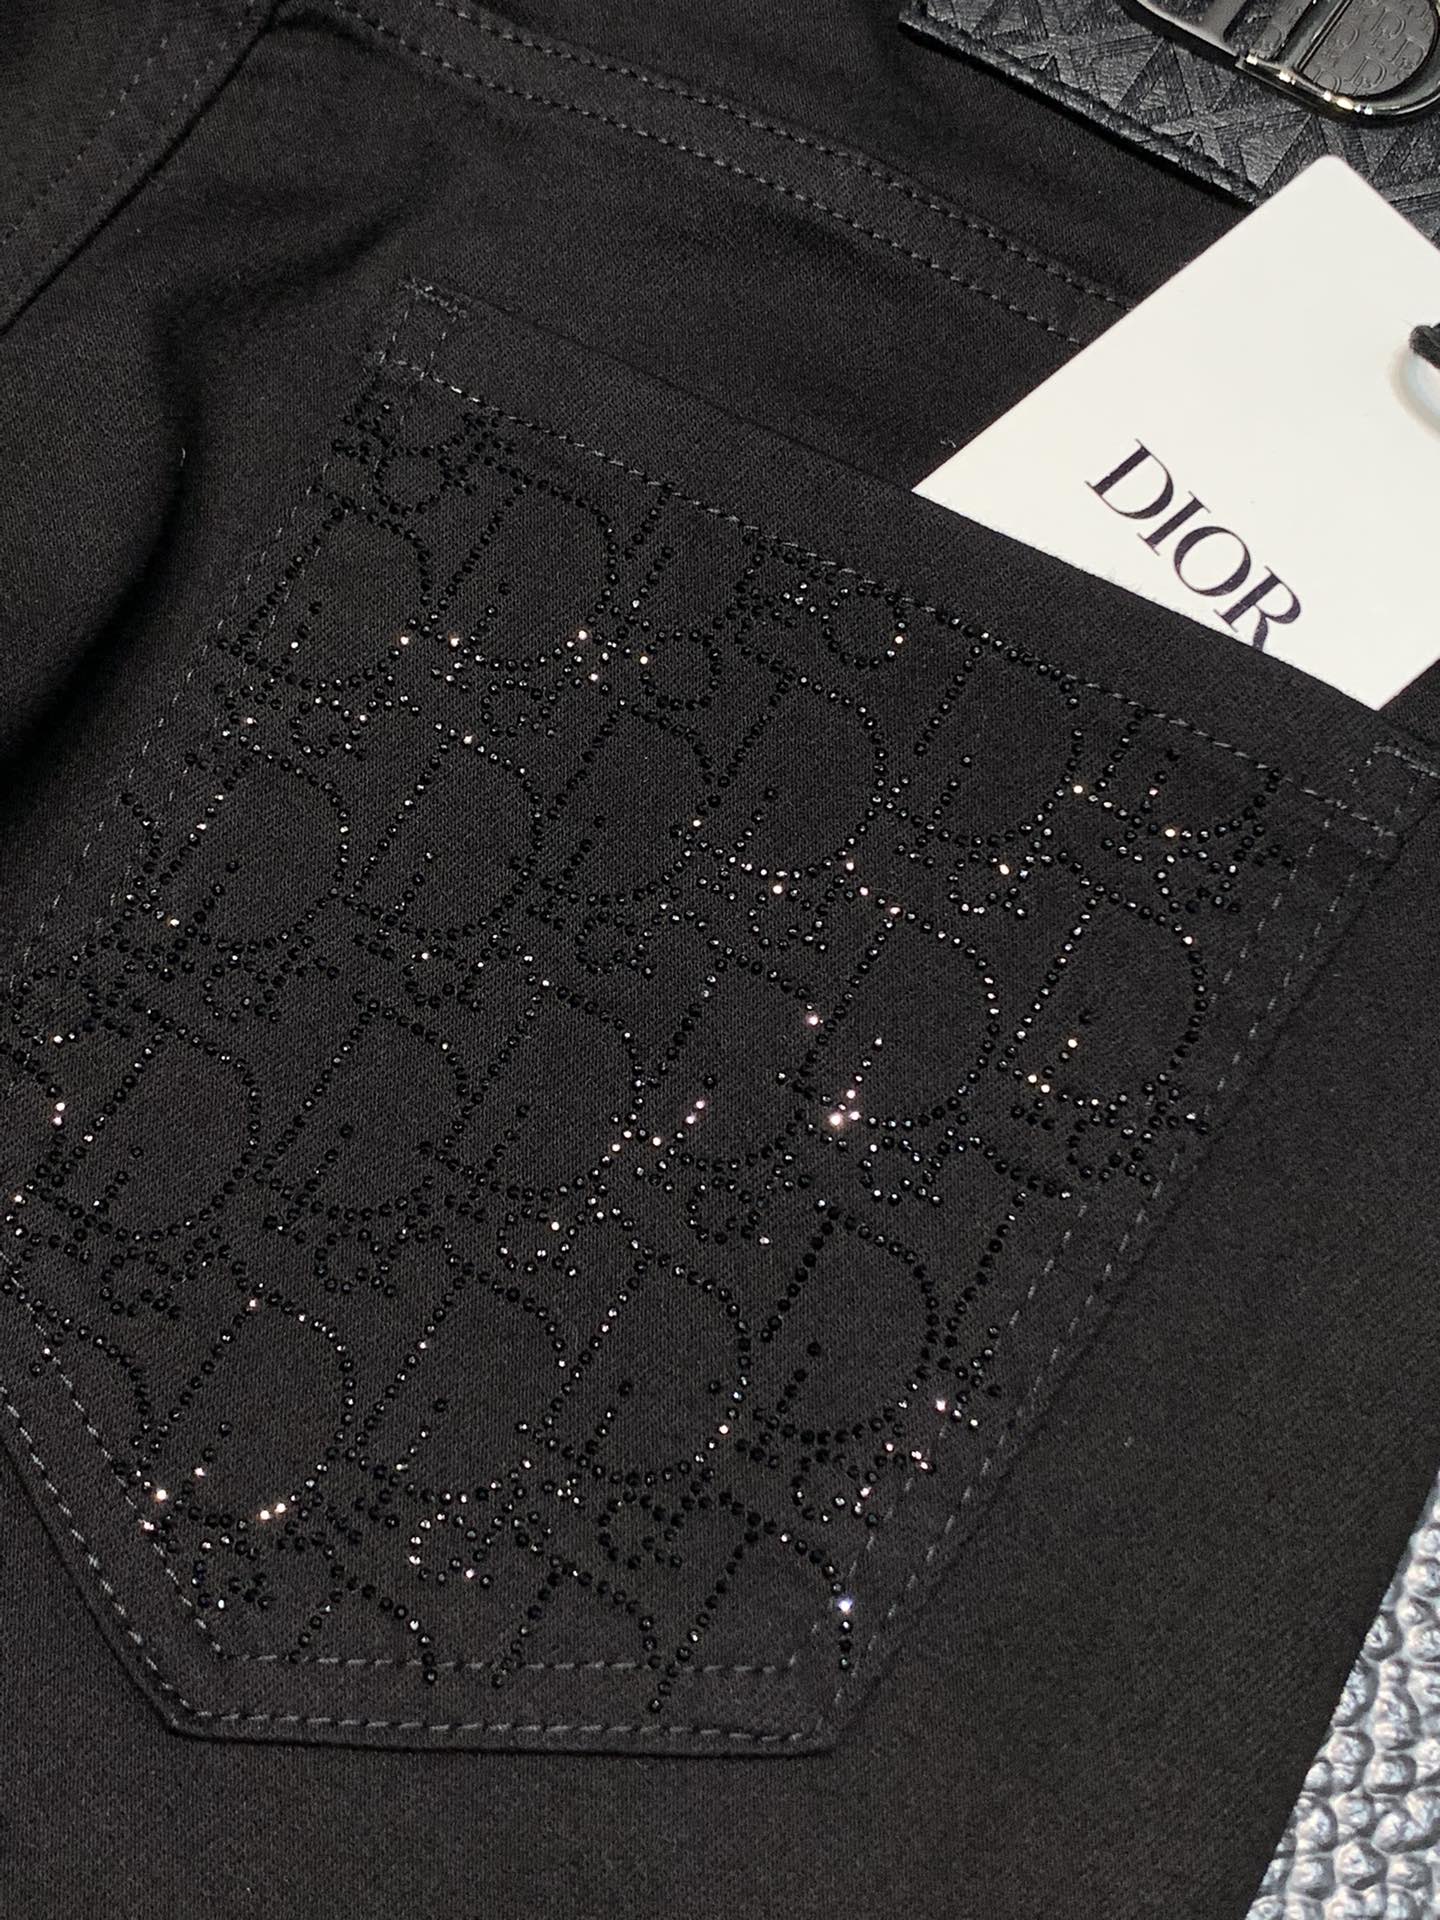 Dior迪奥独家专供新款休闲牛仔裤高端版本专柜定制面料透气舒适度高细节无可挑剔品牌元素设计理念体现高品质